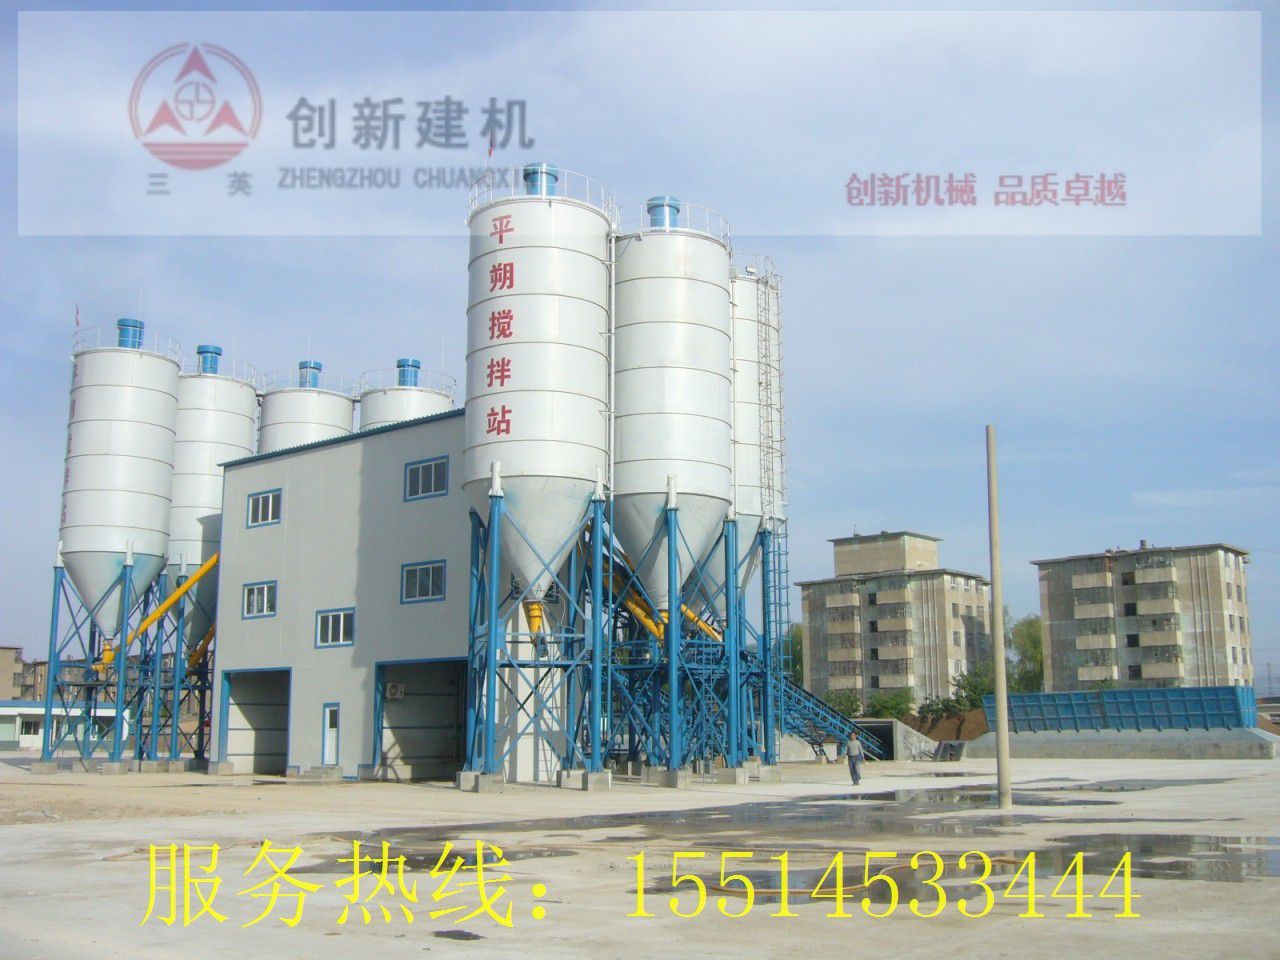 许昌襄城县混凝土配料机下游需求萎靡厂家之间的竞争更加激烈